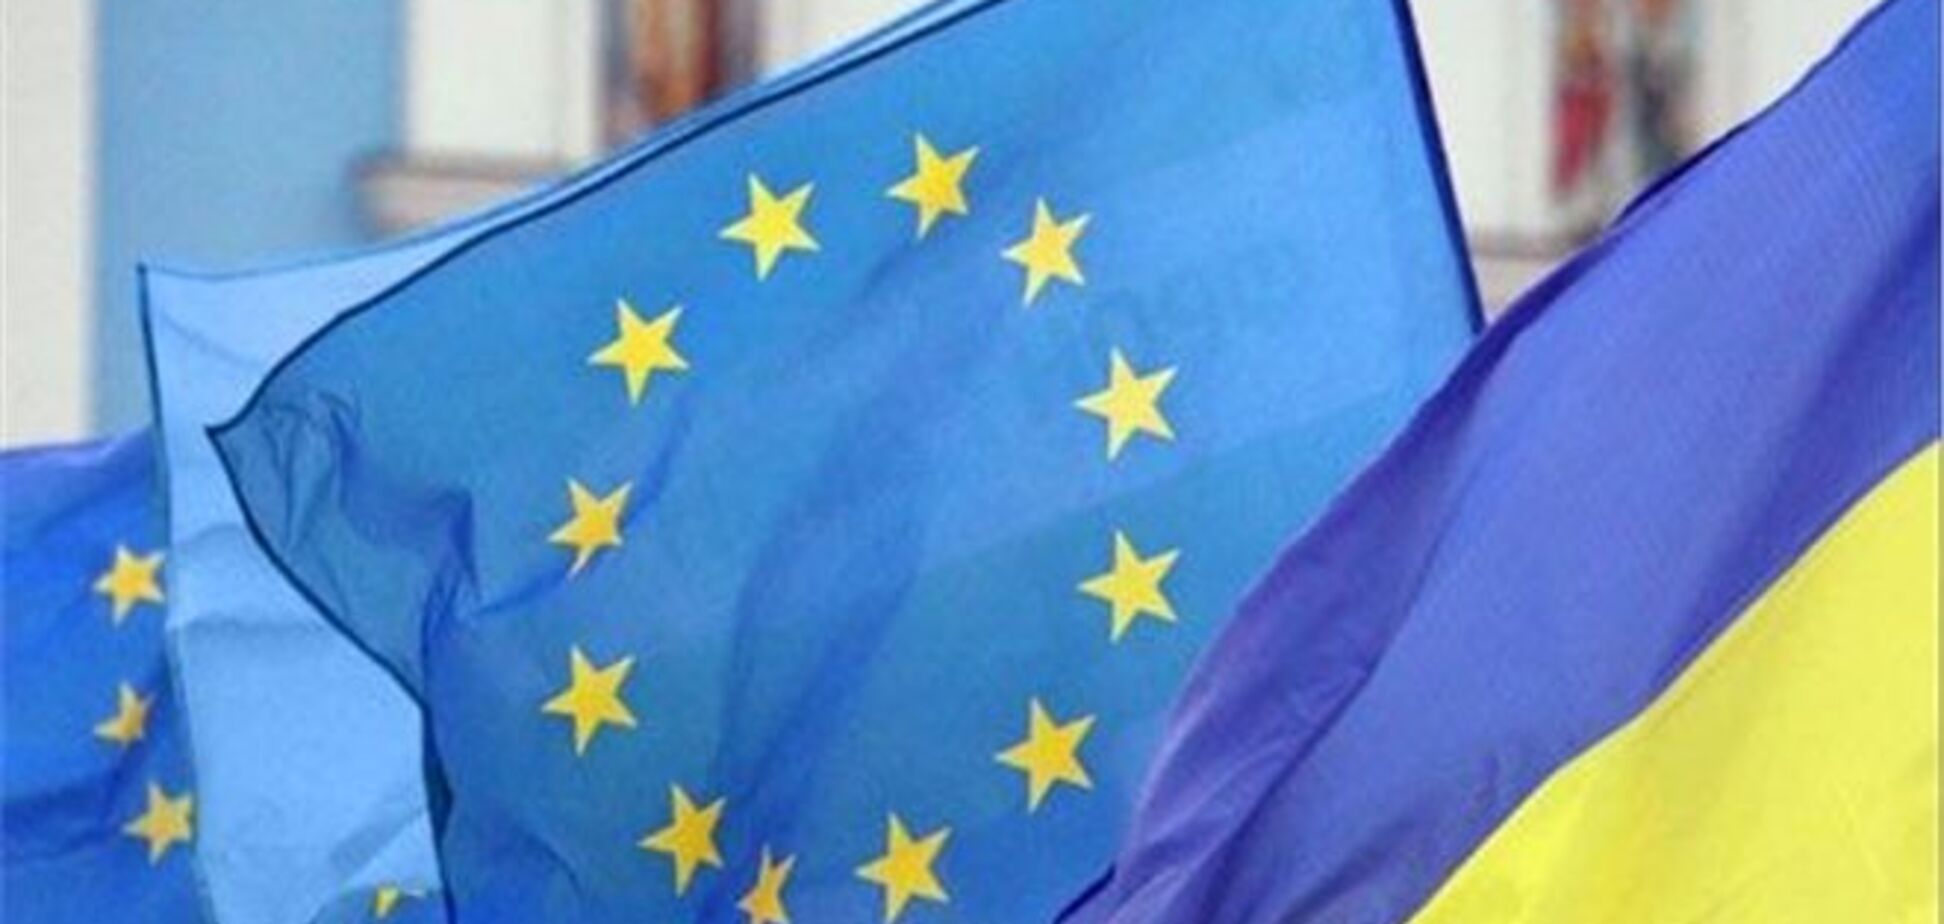 Посол ЄС: на переговорах про асоціацію на Україну ніхто не тиснув